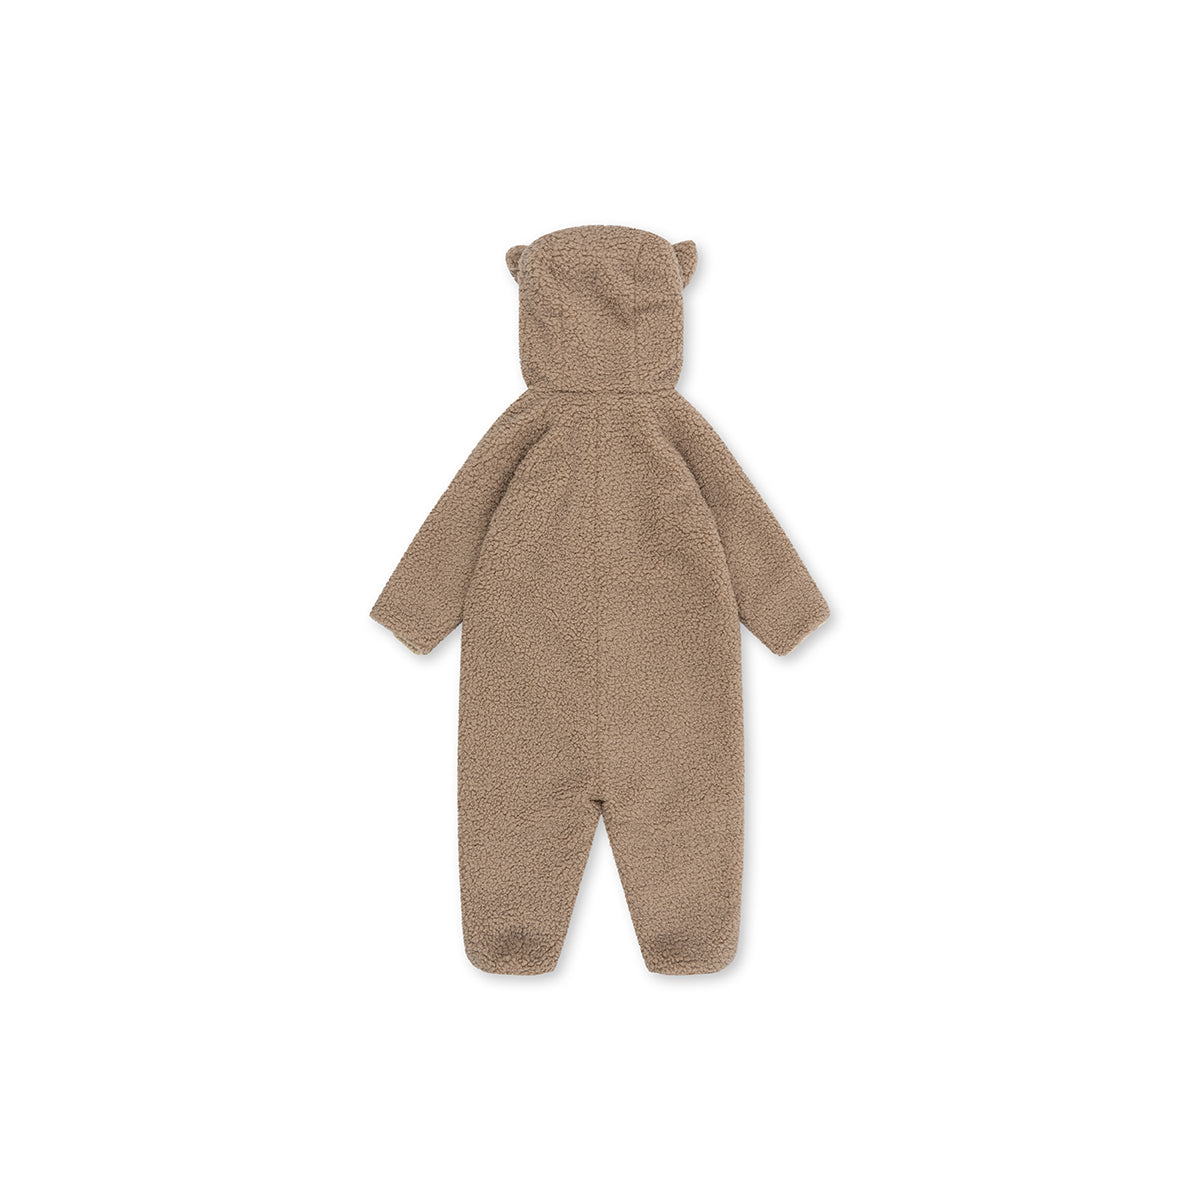 Jouw kindje is warm, zacht en comfortabel met deze superschattige onesie van Konges Slojd. De grizz teddy onesie in de kleur oxford tan heeft een warme teddy stof aan de buitenkant en een katoenen voering met leuke print. VanZus